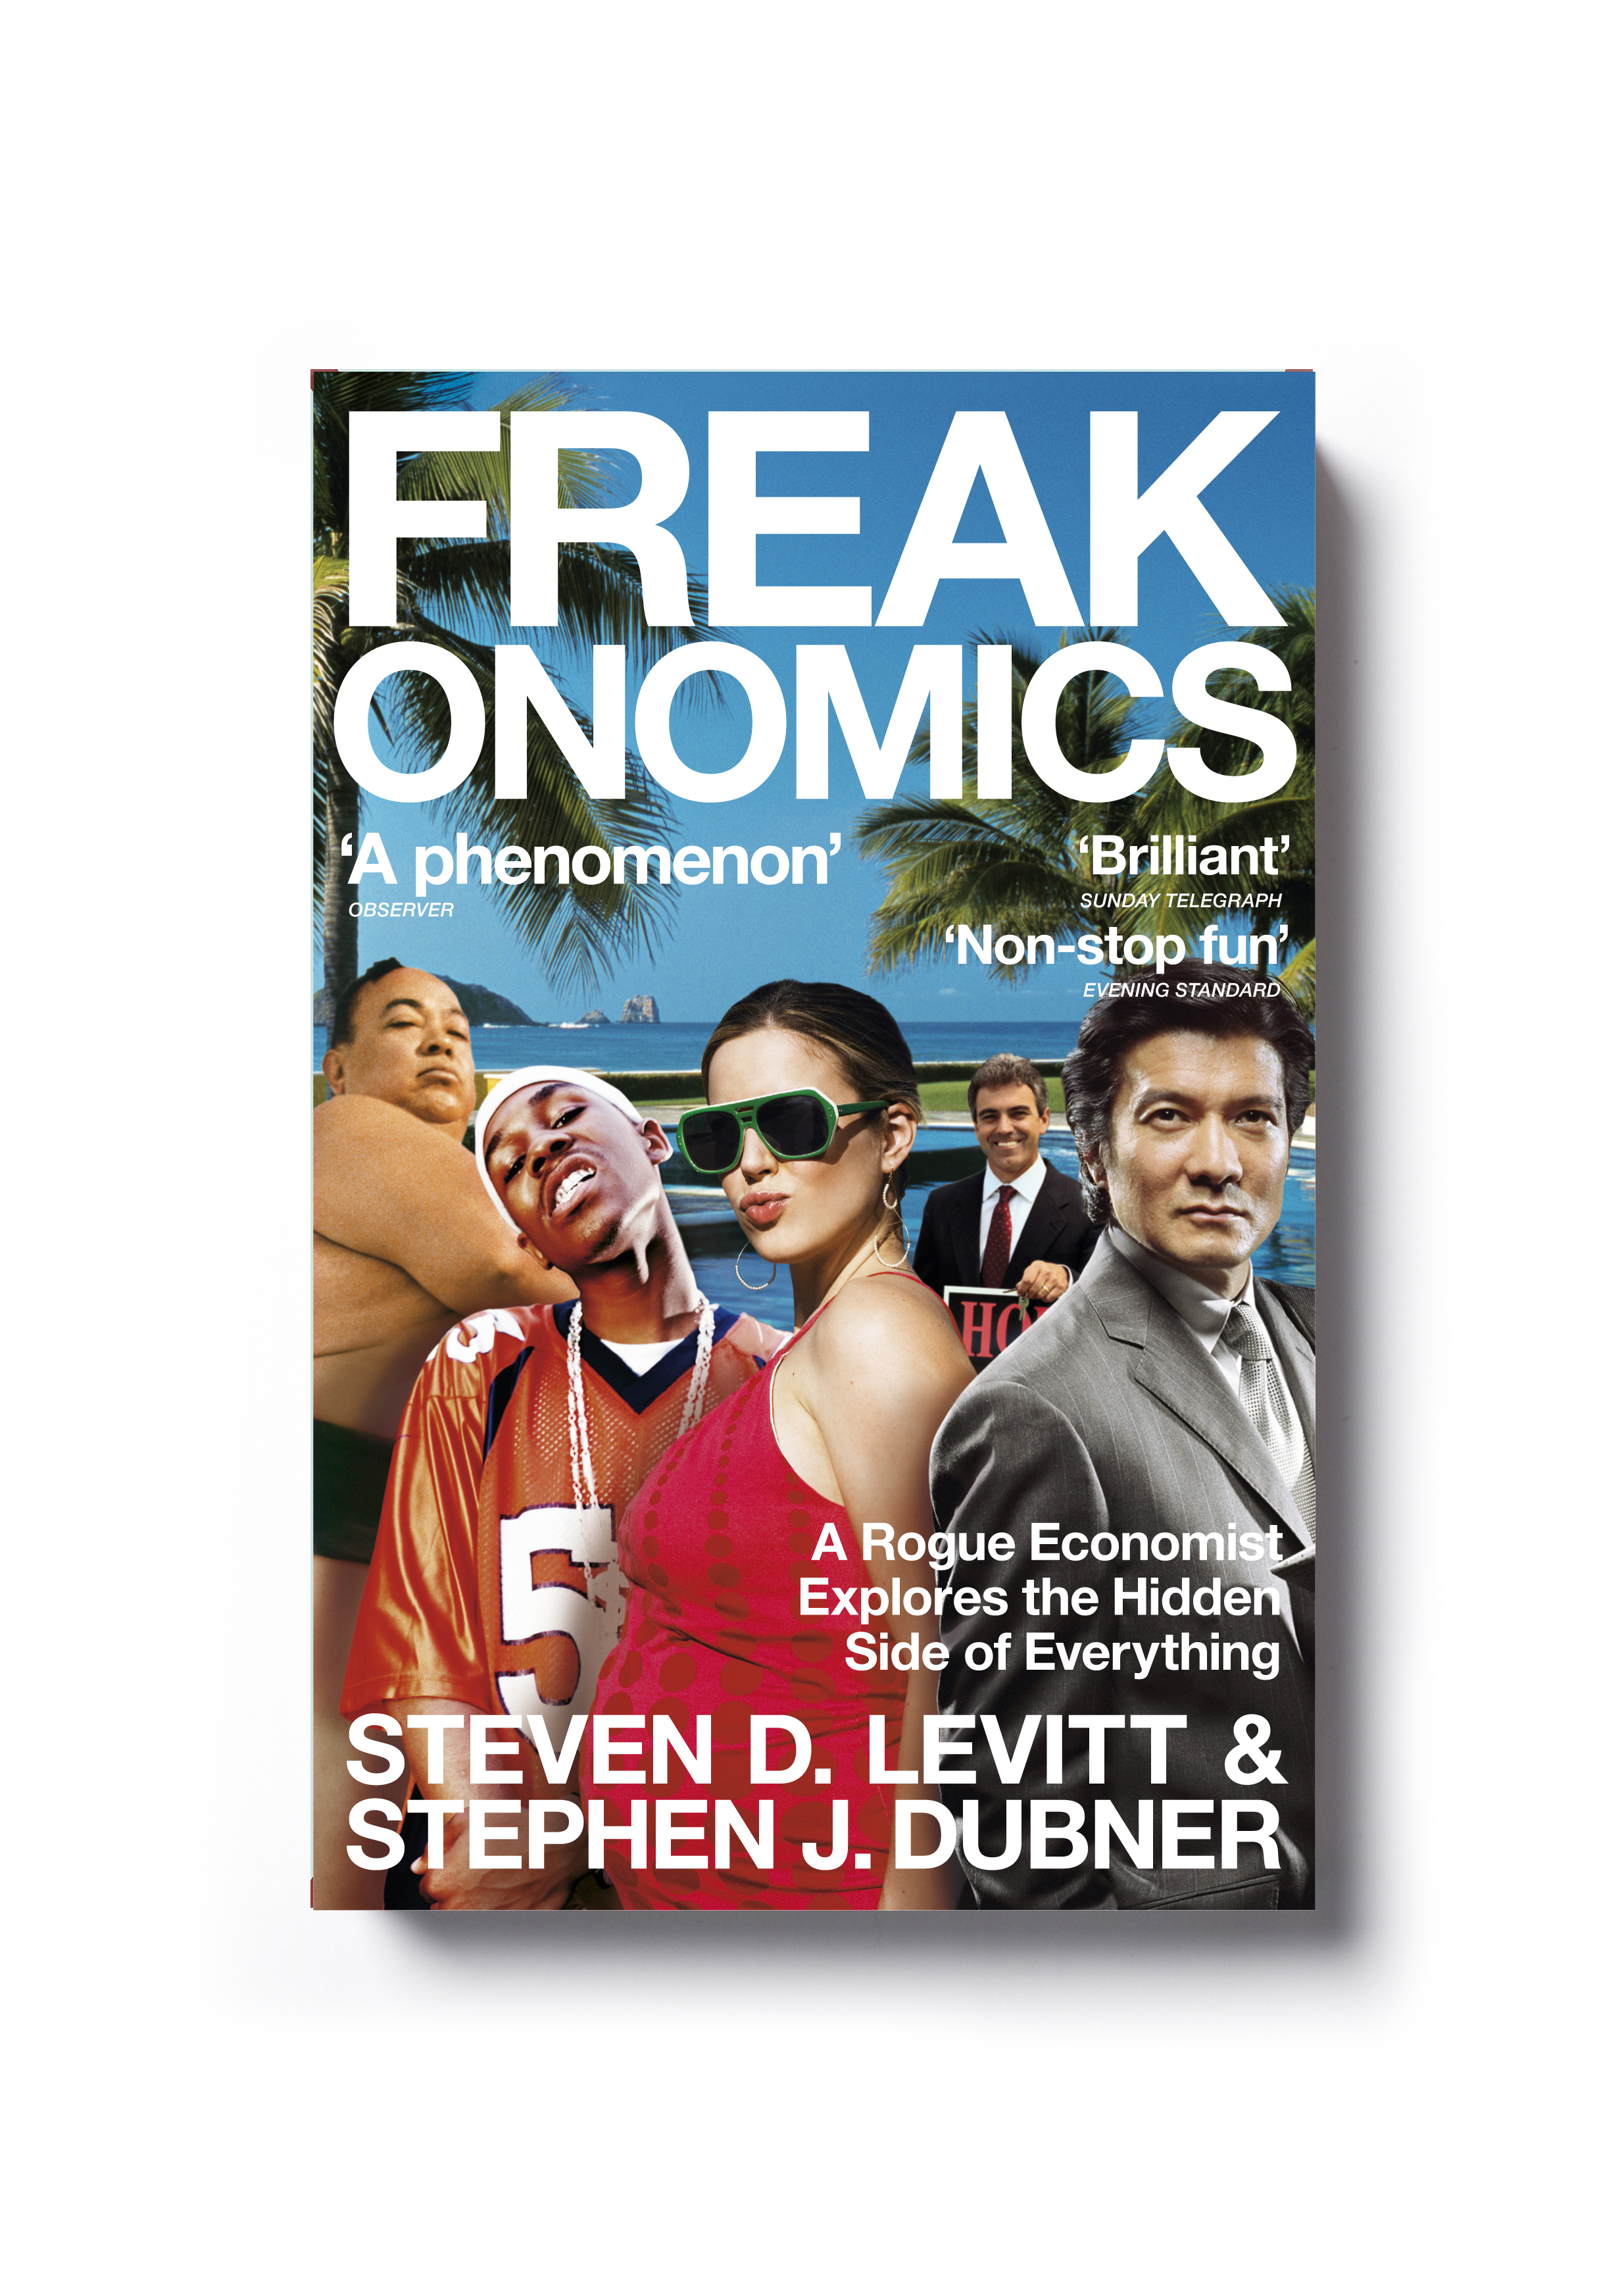  Freakonomics by Steven D. Levitt &amp; Stephen J. Dubner (paperback)&nbsp; - Art Direction: Jim Stoddart Design: Root Design  &nbsp; 